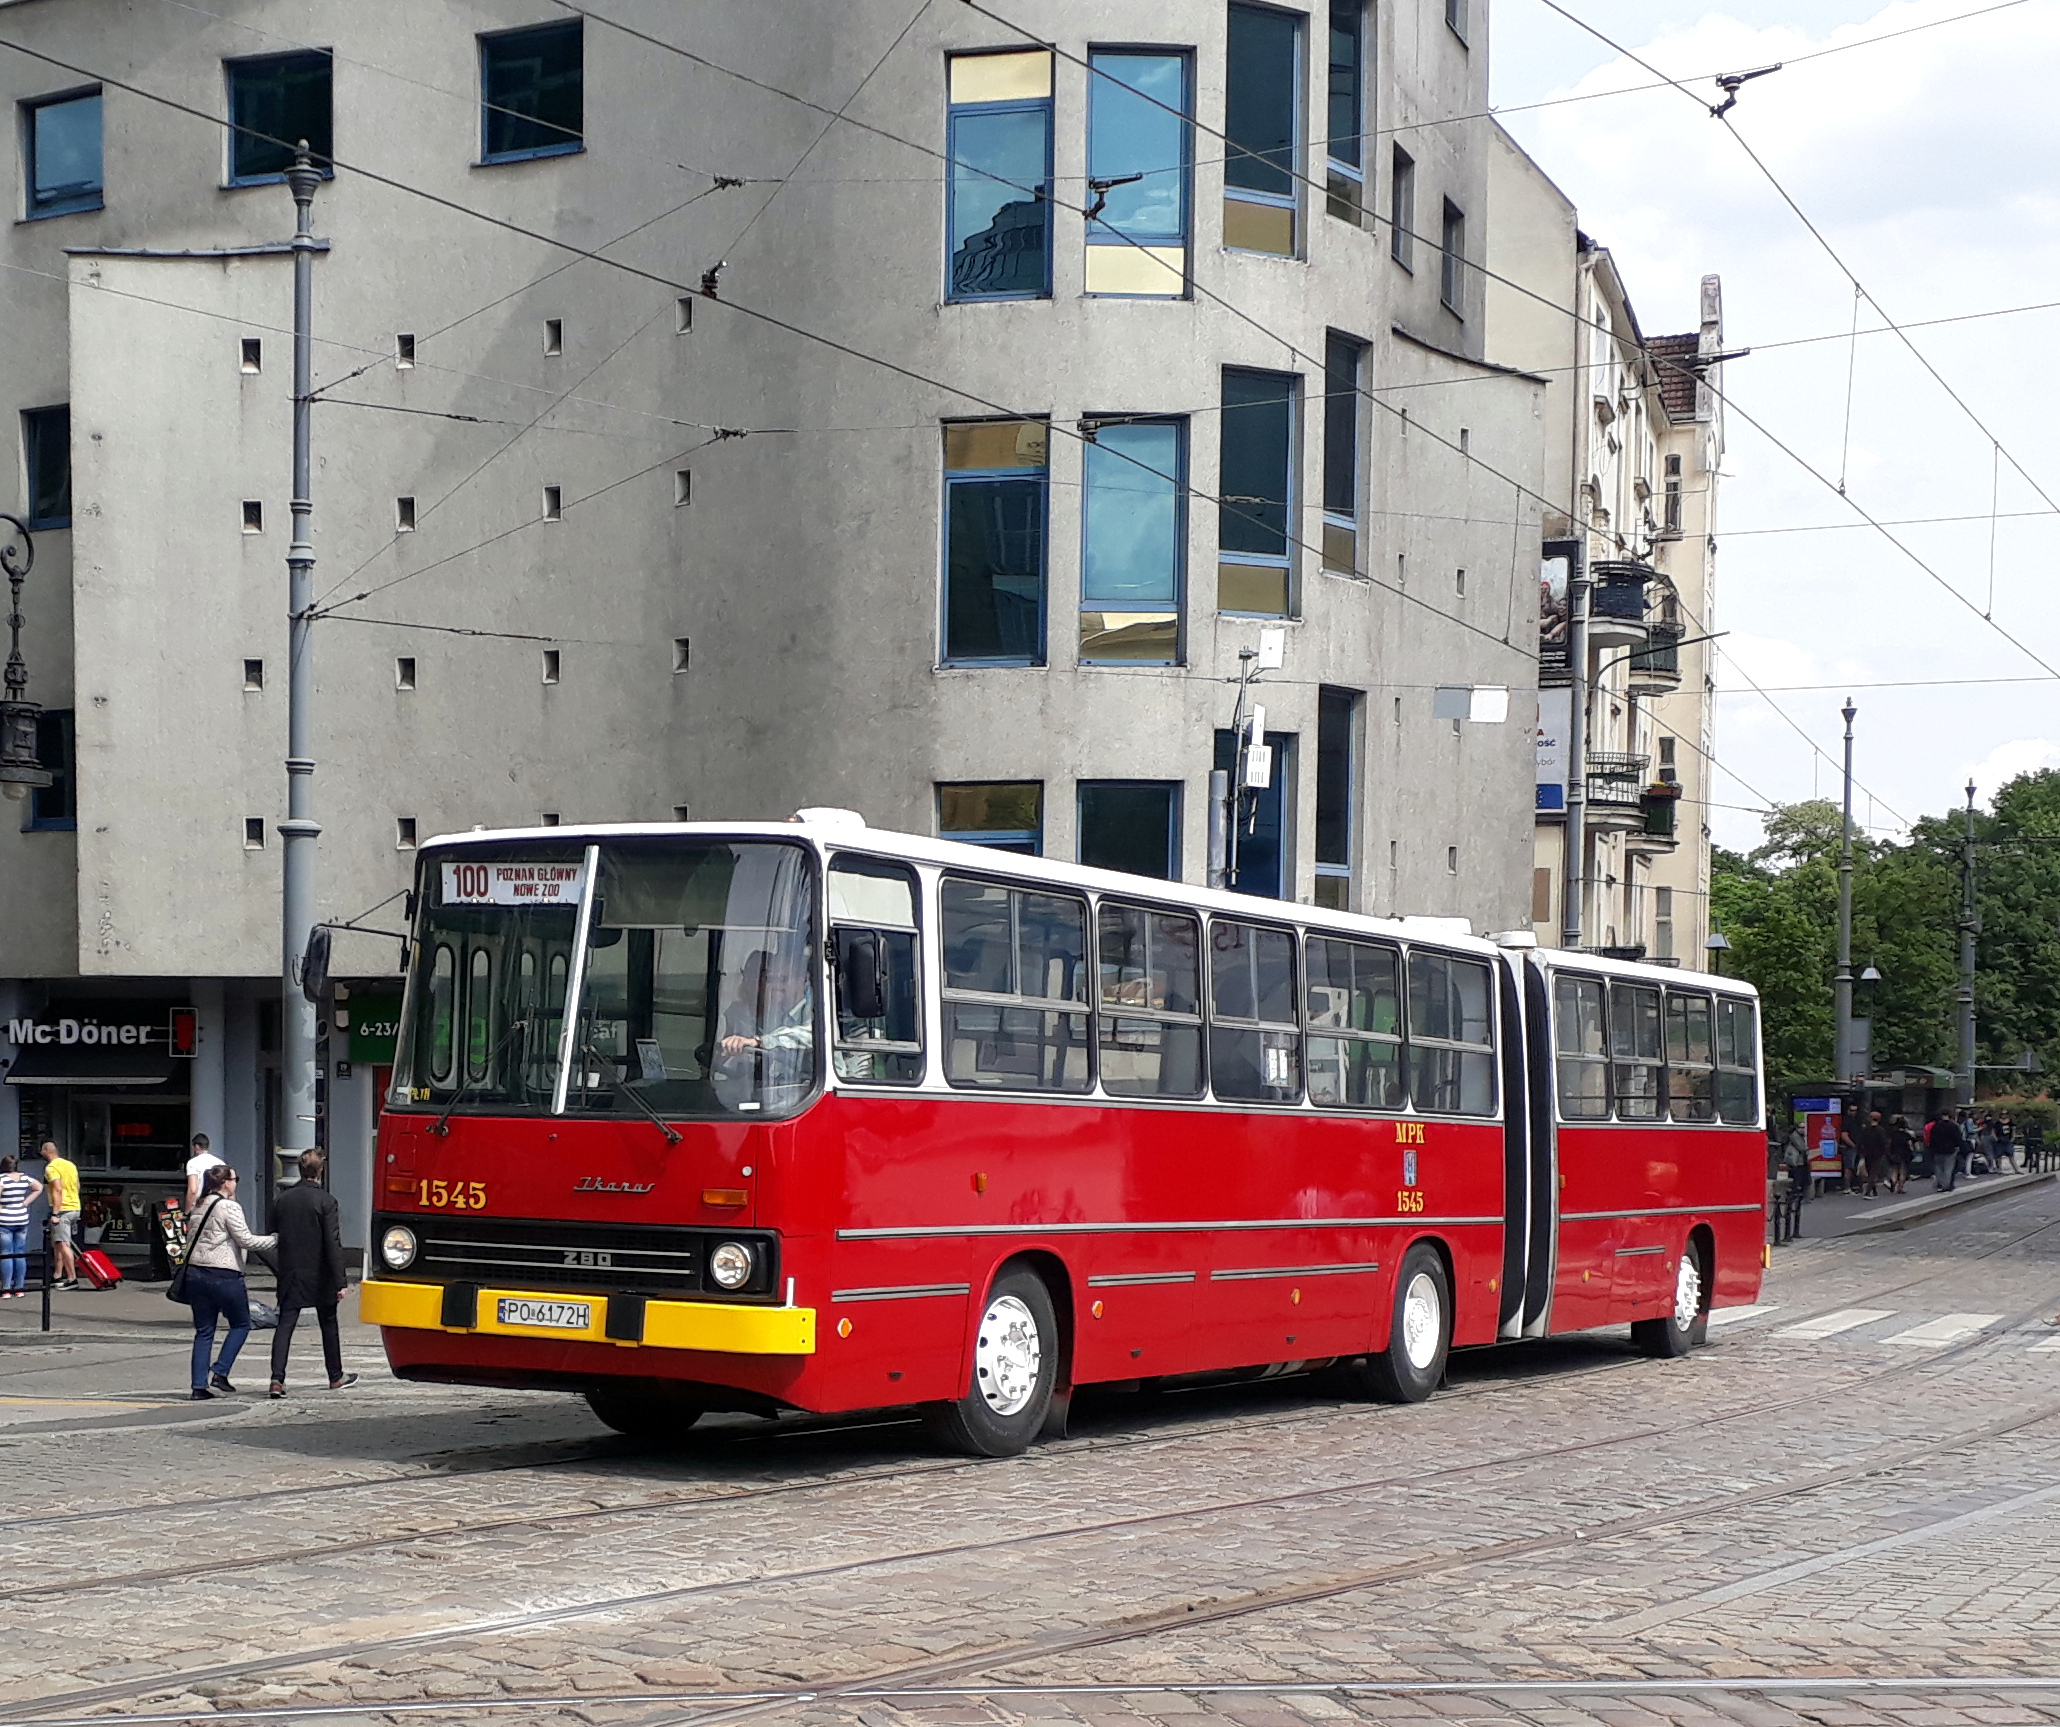 Od soboty (20 czerwca) znów będzie można zwiedzać miasto na pokładzie zabytkowego tramwaju lub autobusu